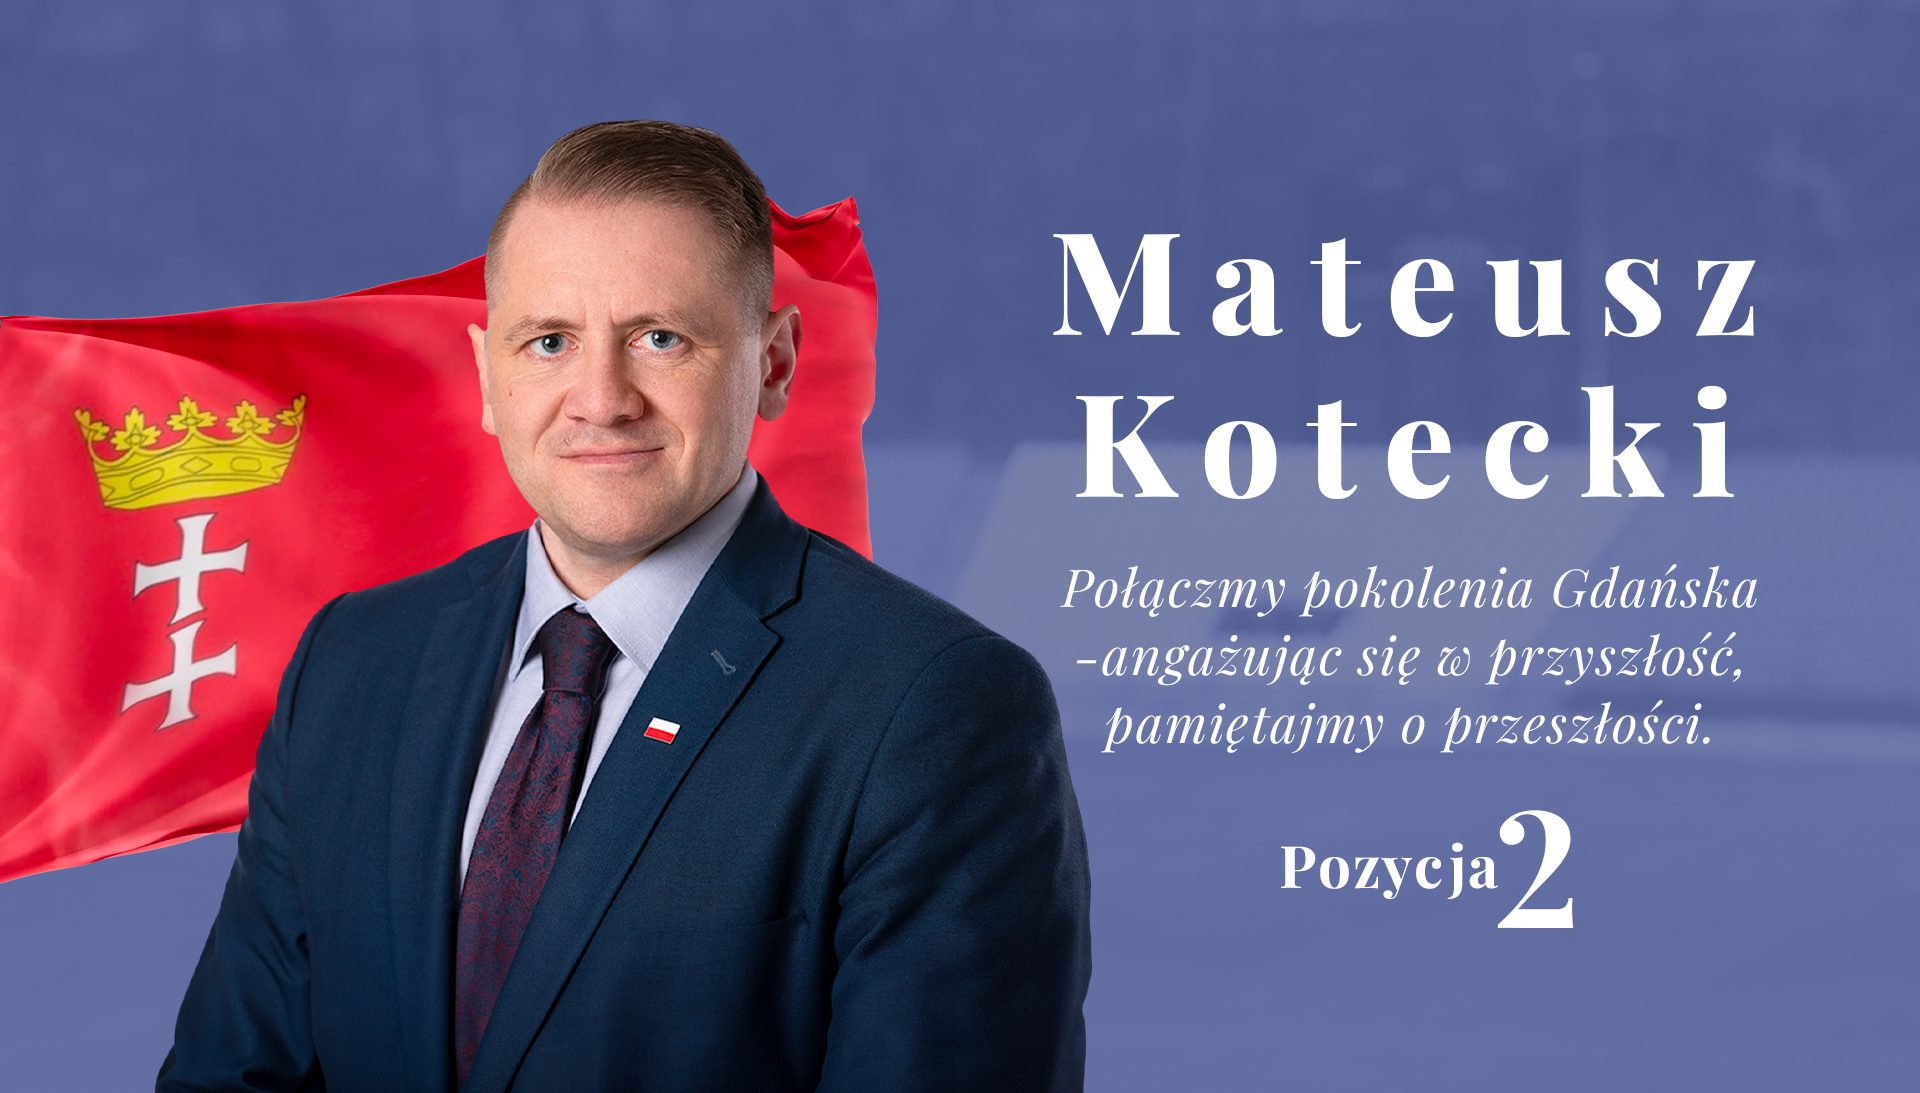 Mateusz Kotecki - Połączmy pokolenia Gdańska - angażując się w przyszłość, pamiętajmy o przeszłości.